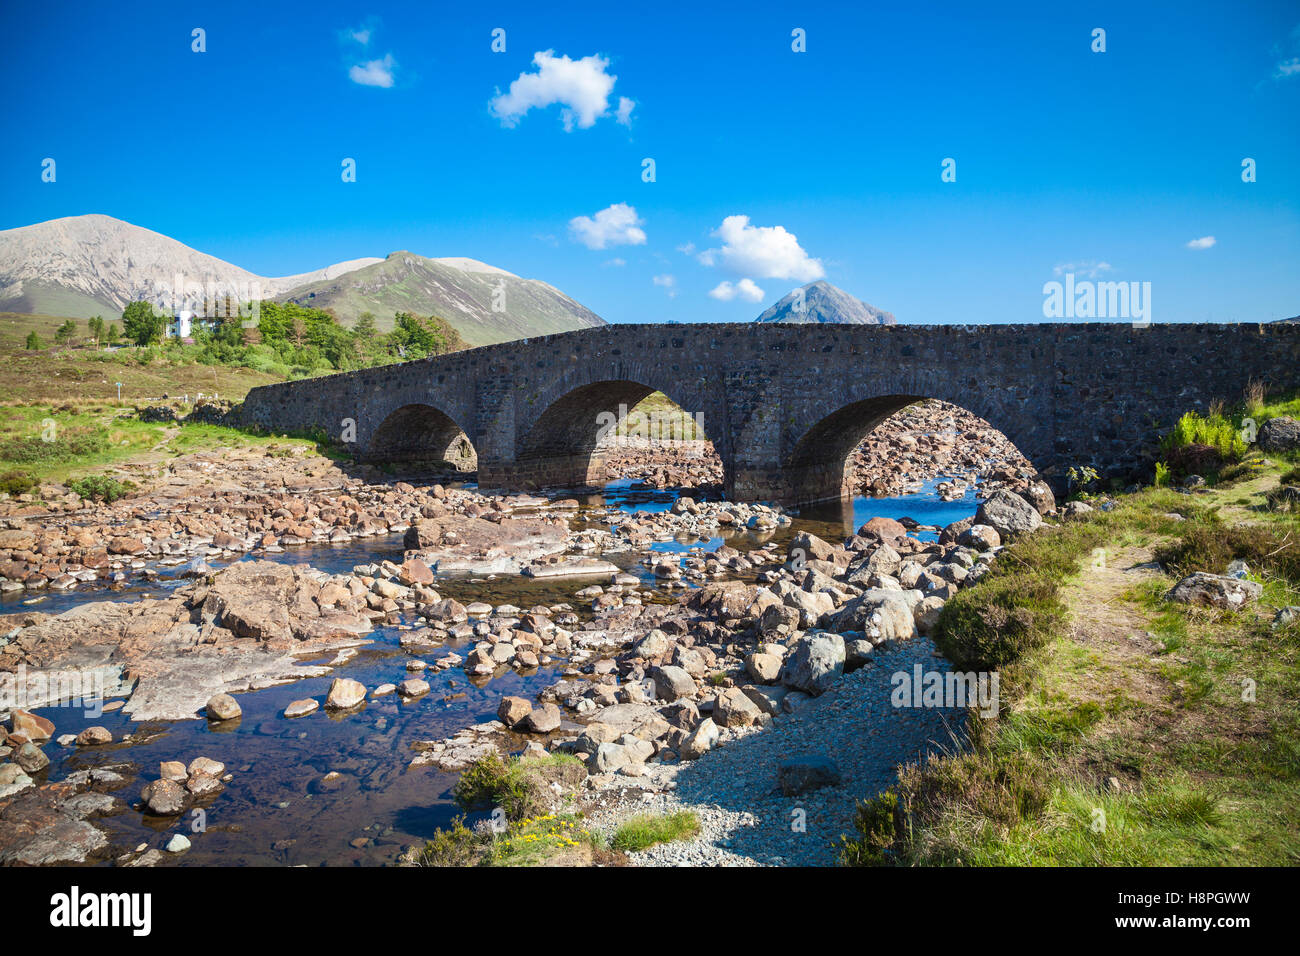 Le vieux pont de Sligachan sur l'île de Skye, Écosse Banque D'Images